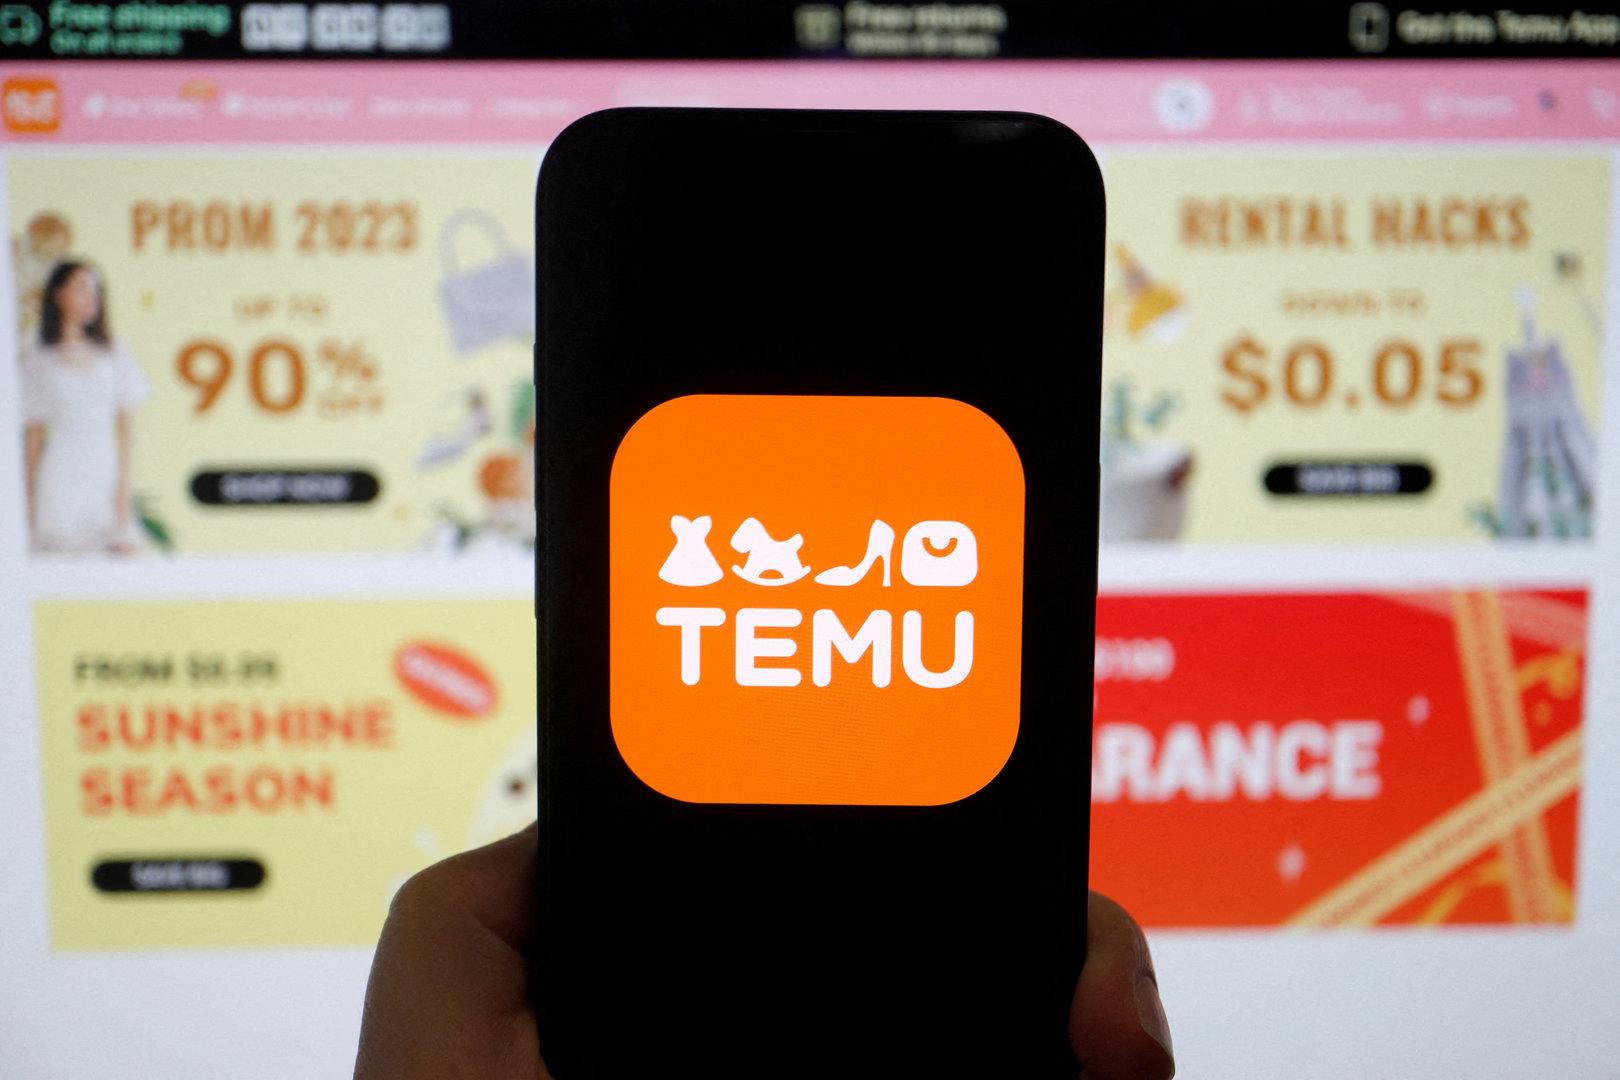 Zu billig um wahr zu sein: Kann man der Shopping-App Temu trauen?